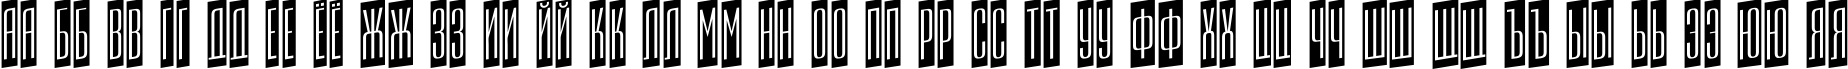 Пример написания русского алфавита шрифтом a_EmpirialCmUp